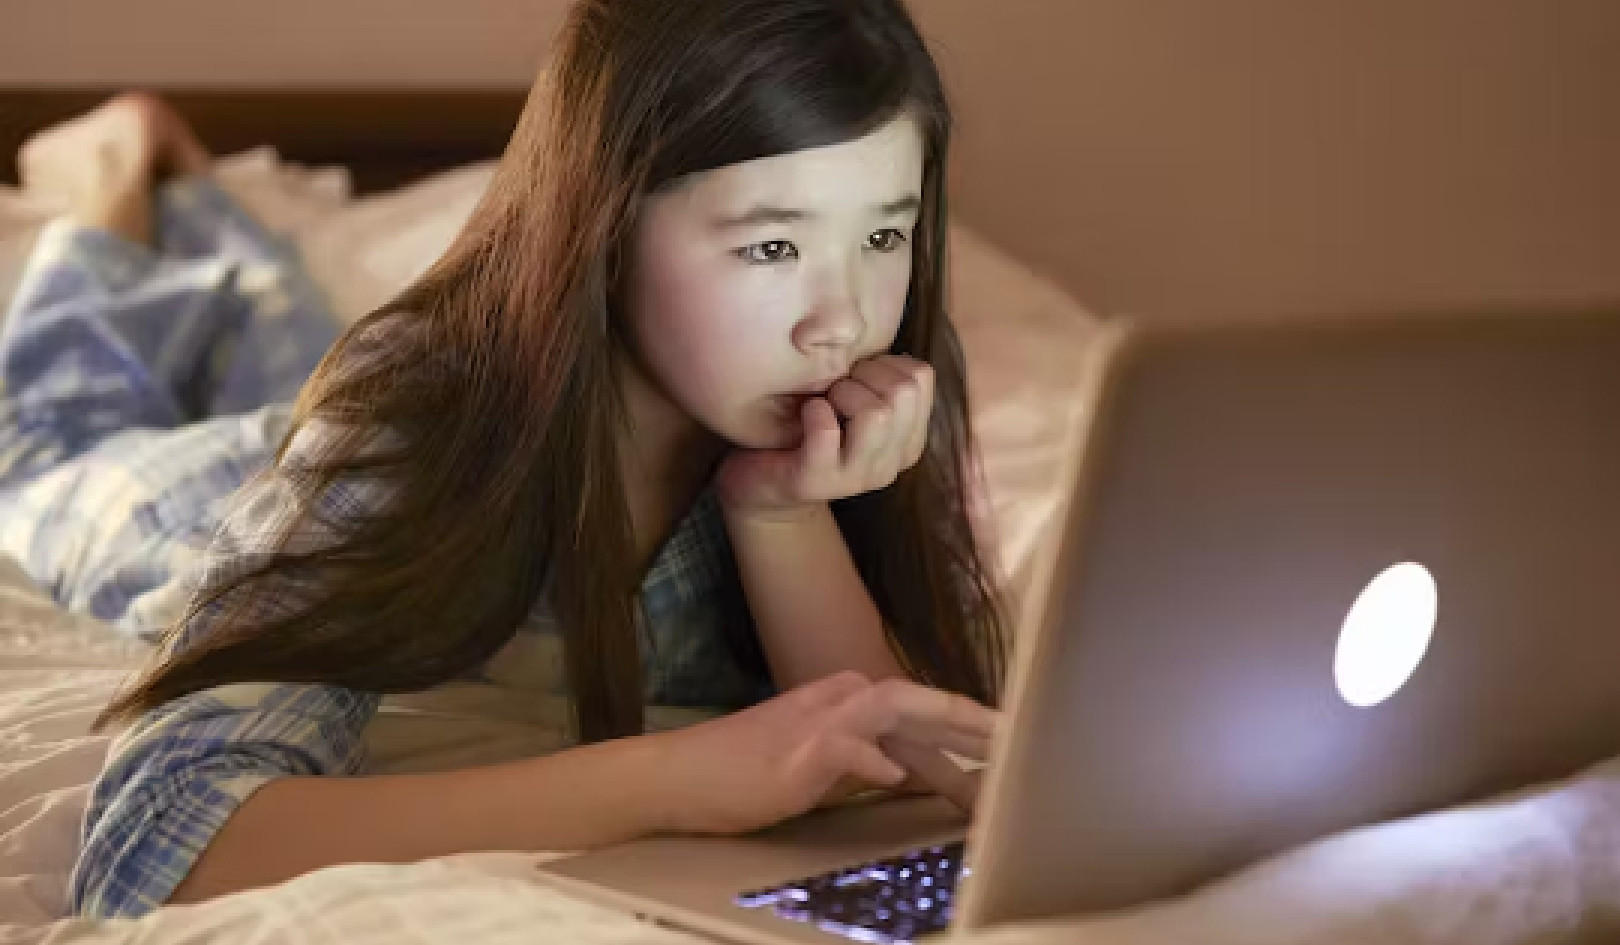 Kinder-Webcams geraten ins Visier von Online-Raubtieren